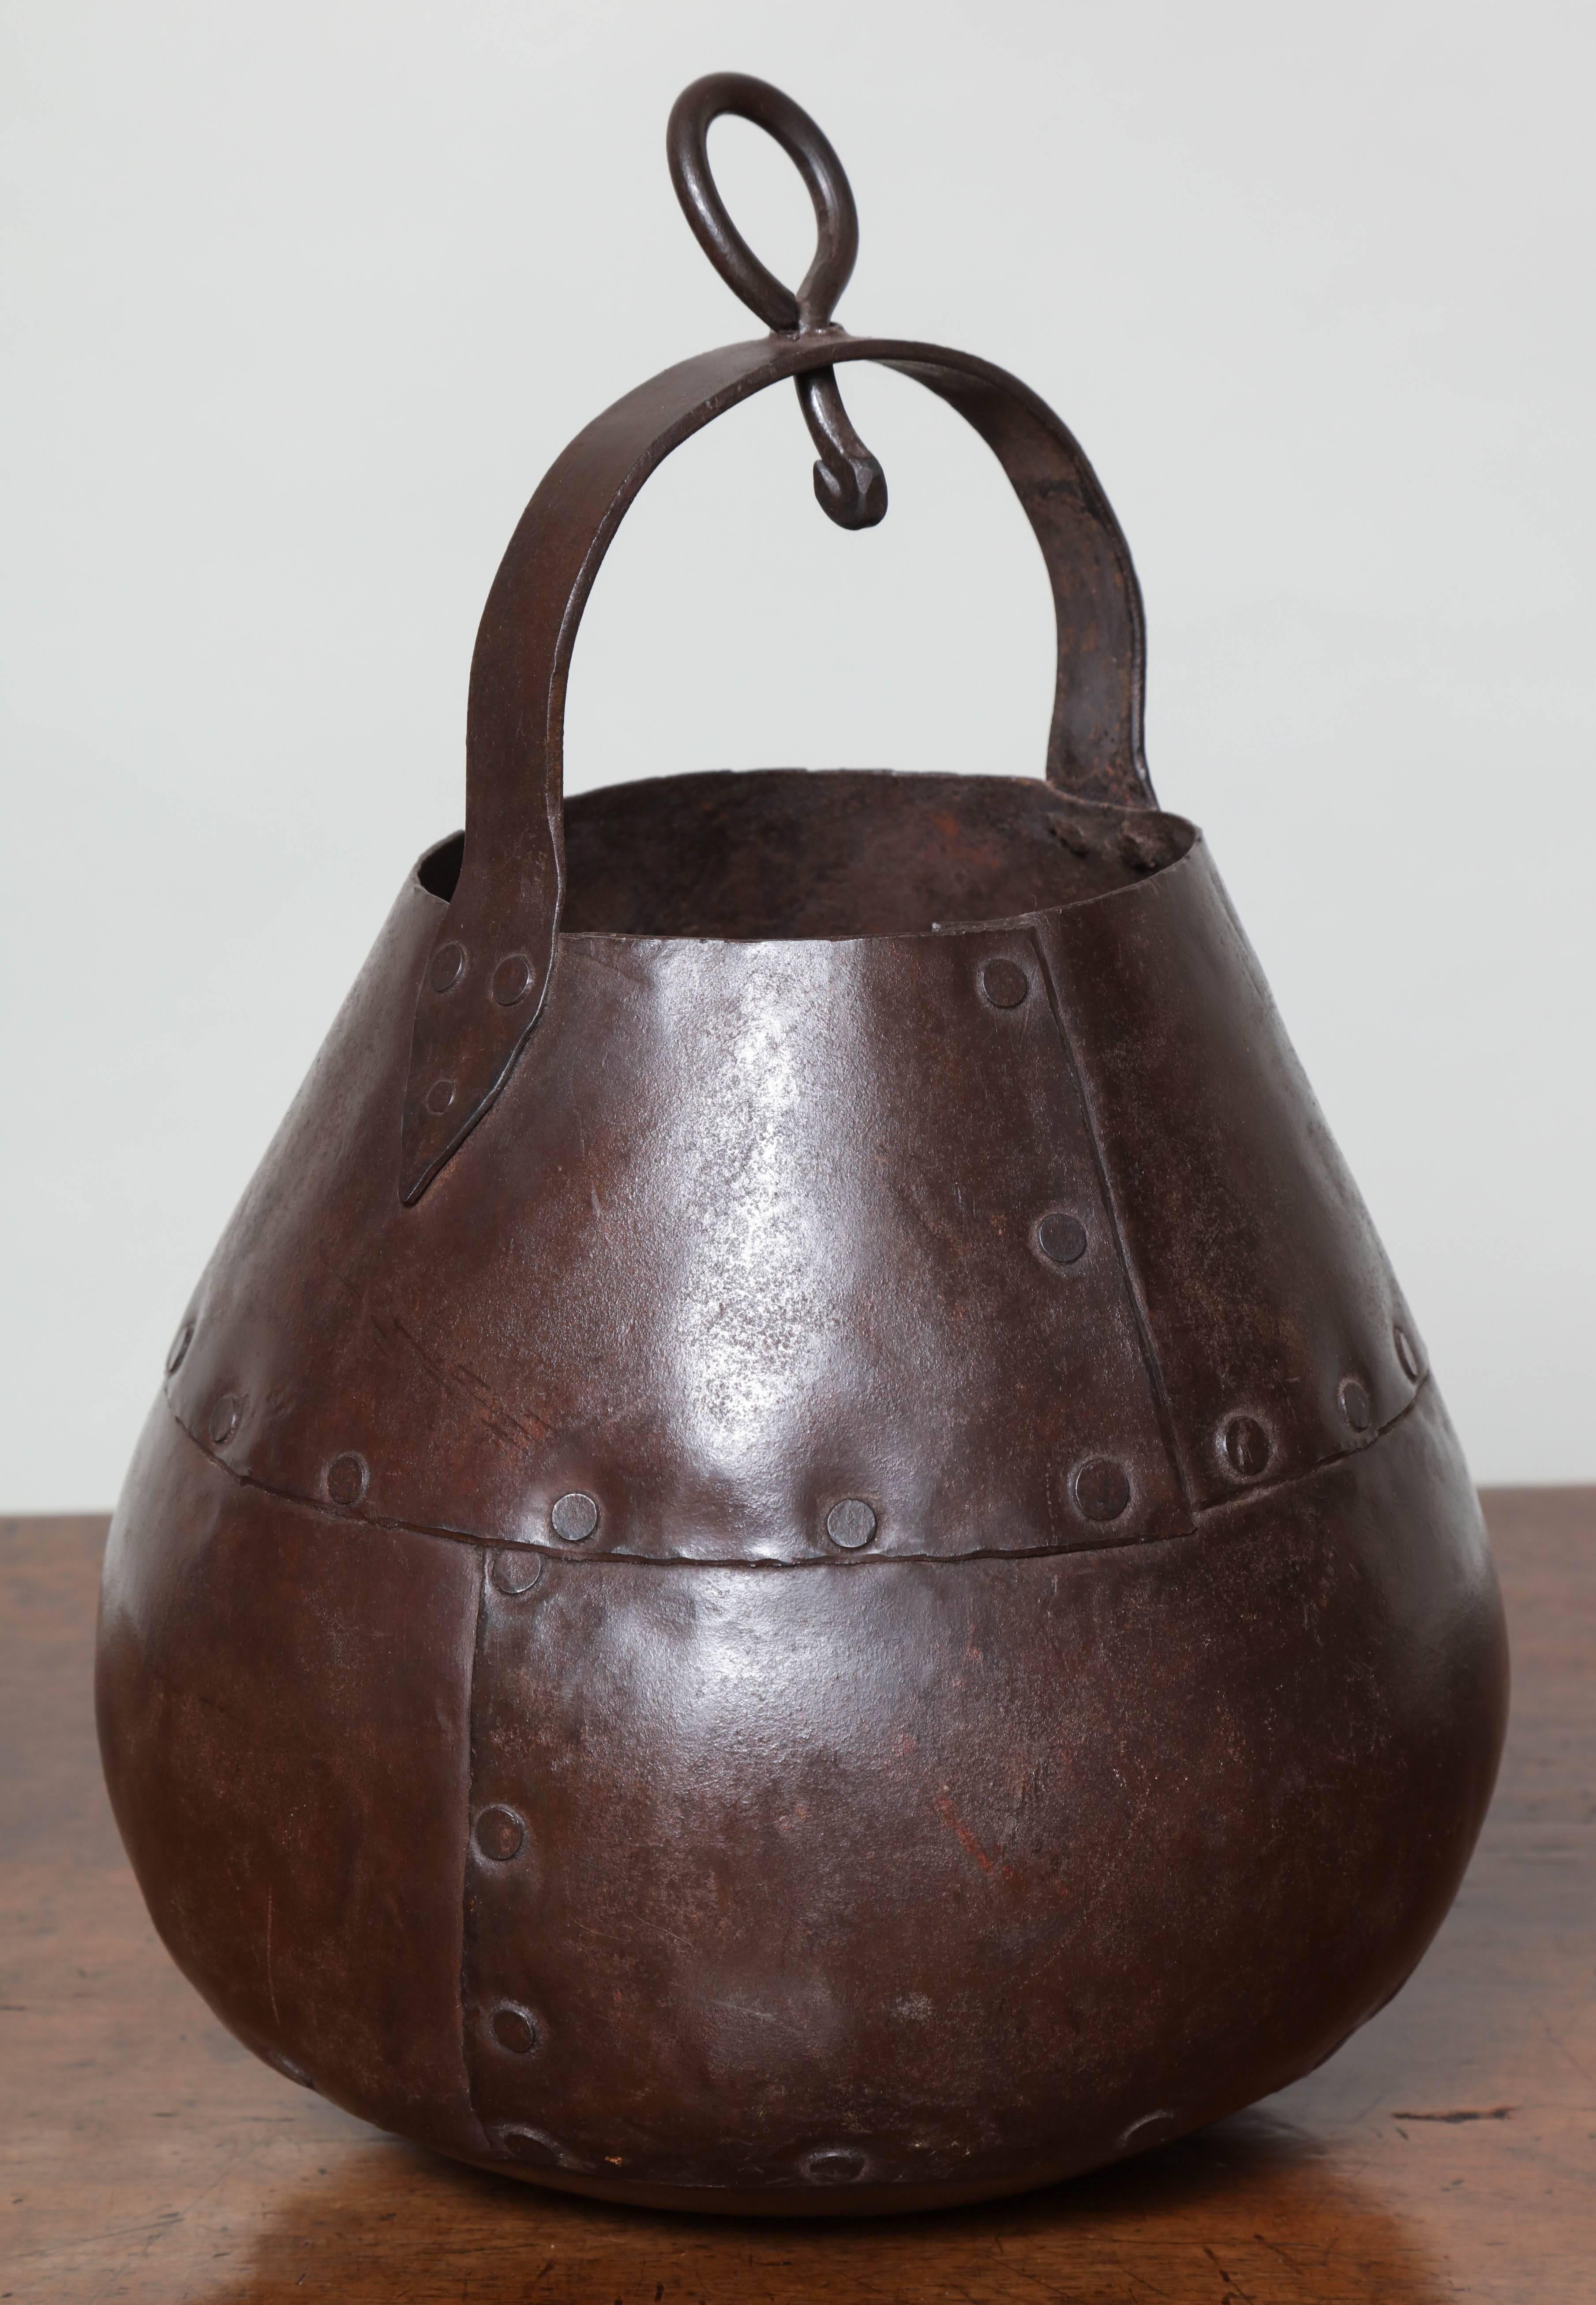 Pot suspendu en forme de poire de la période Arts et Métiers avec des coutures rivetées à la main, une surface battue et une belle couleur.